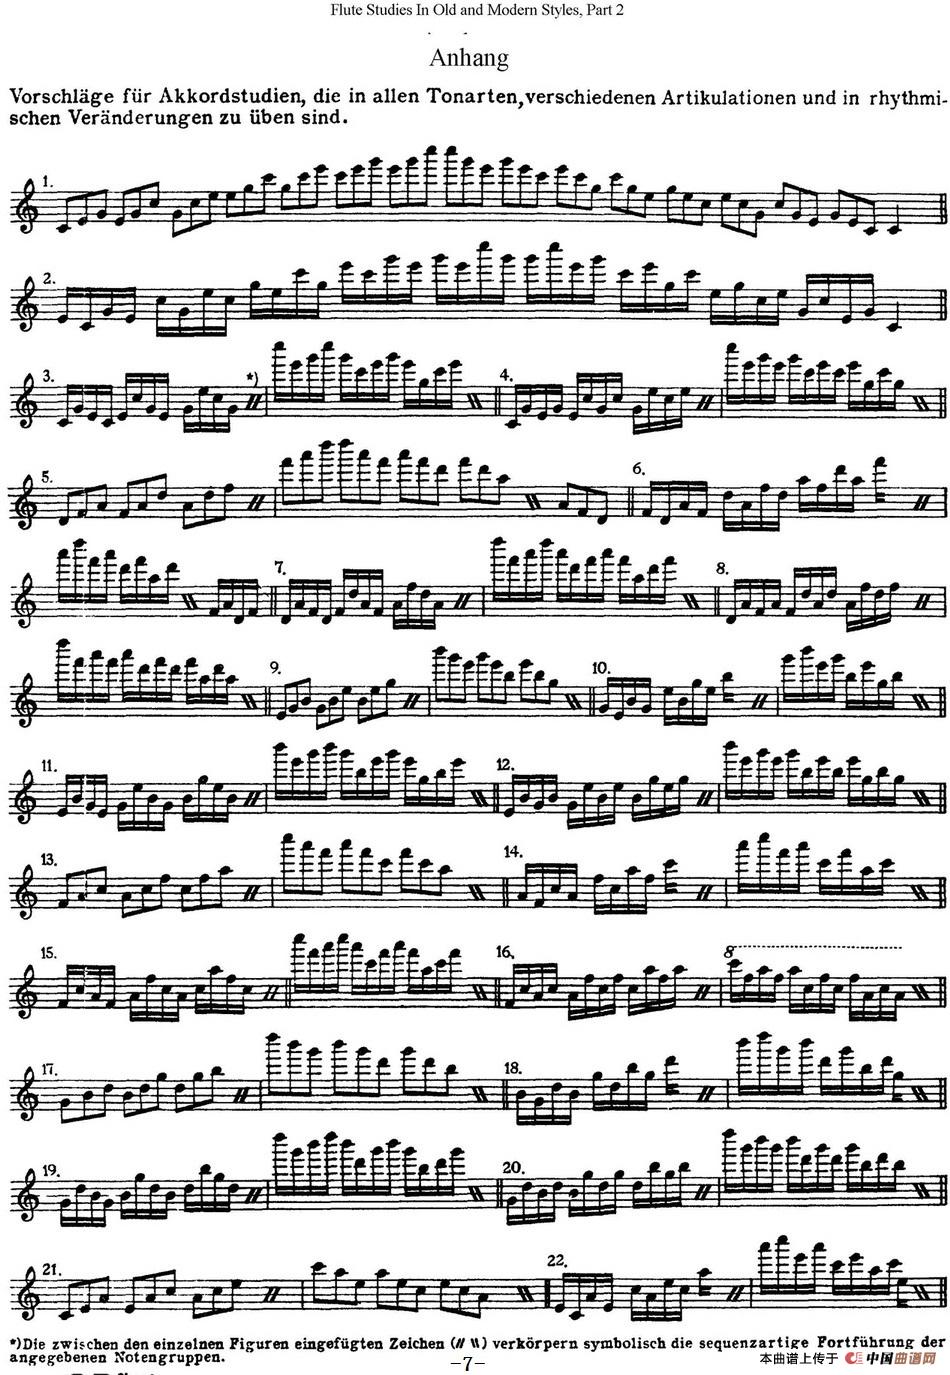 斯勒新老风格长笛练习重奏曲（第二部分）（N